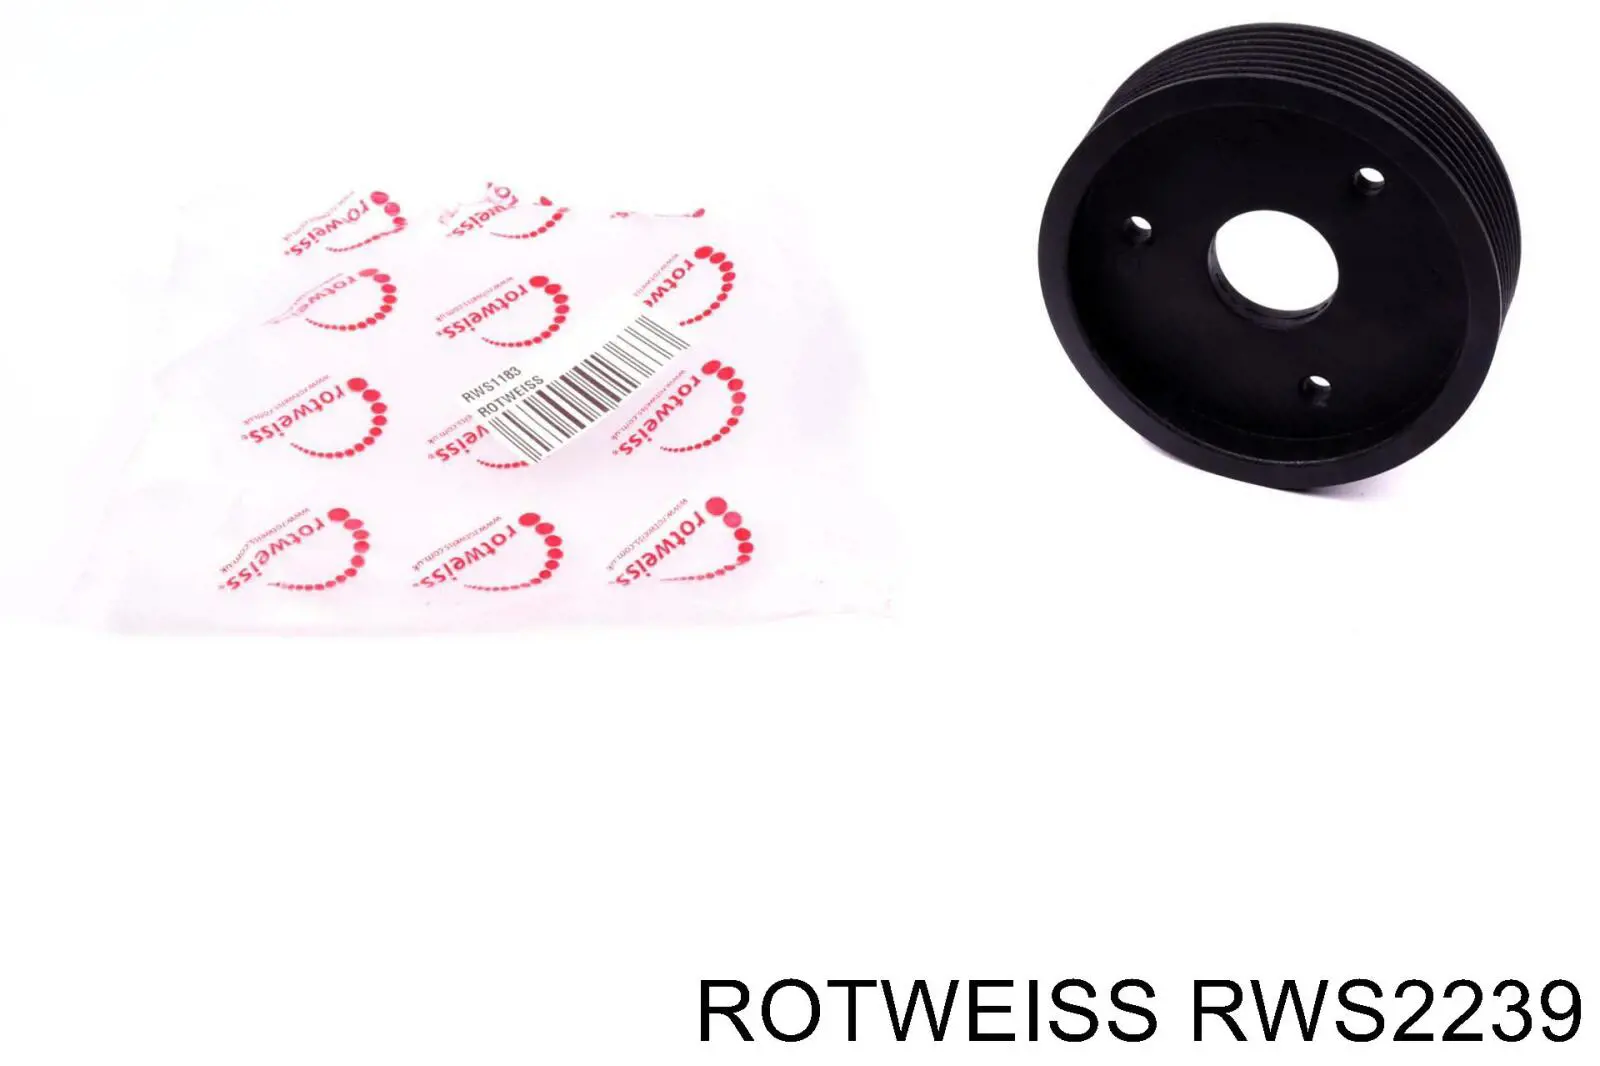 RWS2239 Rotweiss polea, servobomba